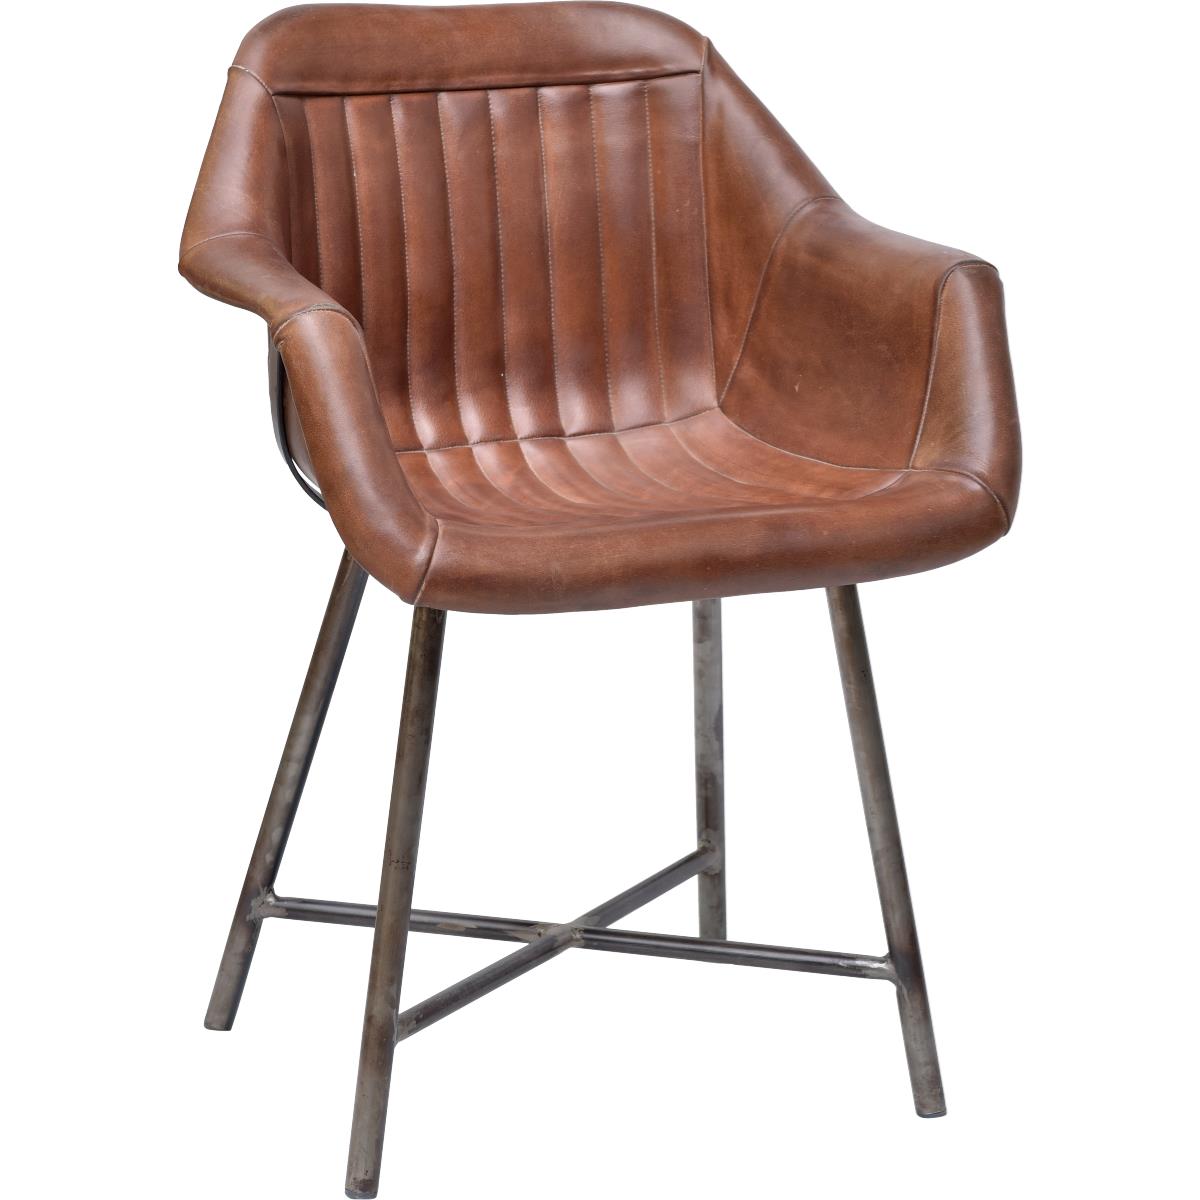 Køb TRADEMARK LIVING spisebordsstol, m. armlæn - brunt læder og jern m. klar lak - Pris 3449.00 kr.